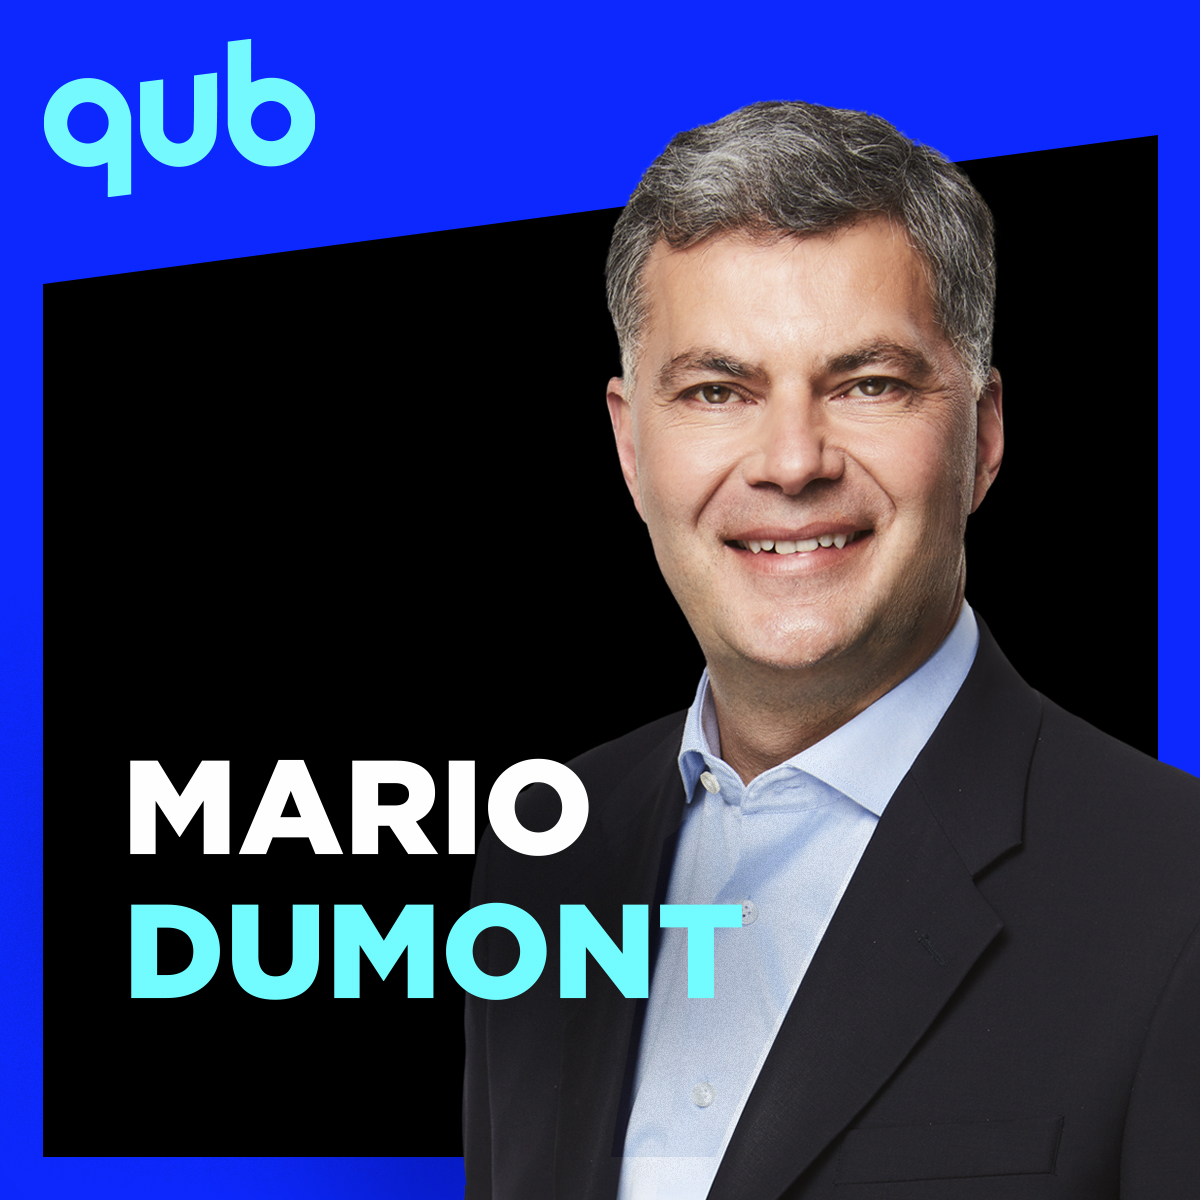 «Au Québec, on a vécu un attentat», rappelle Mario Dumont